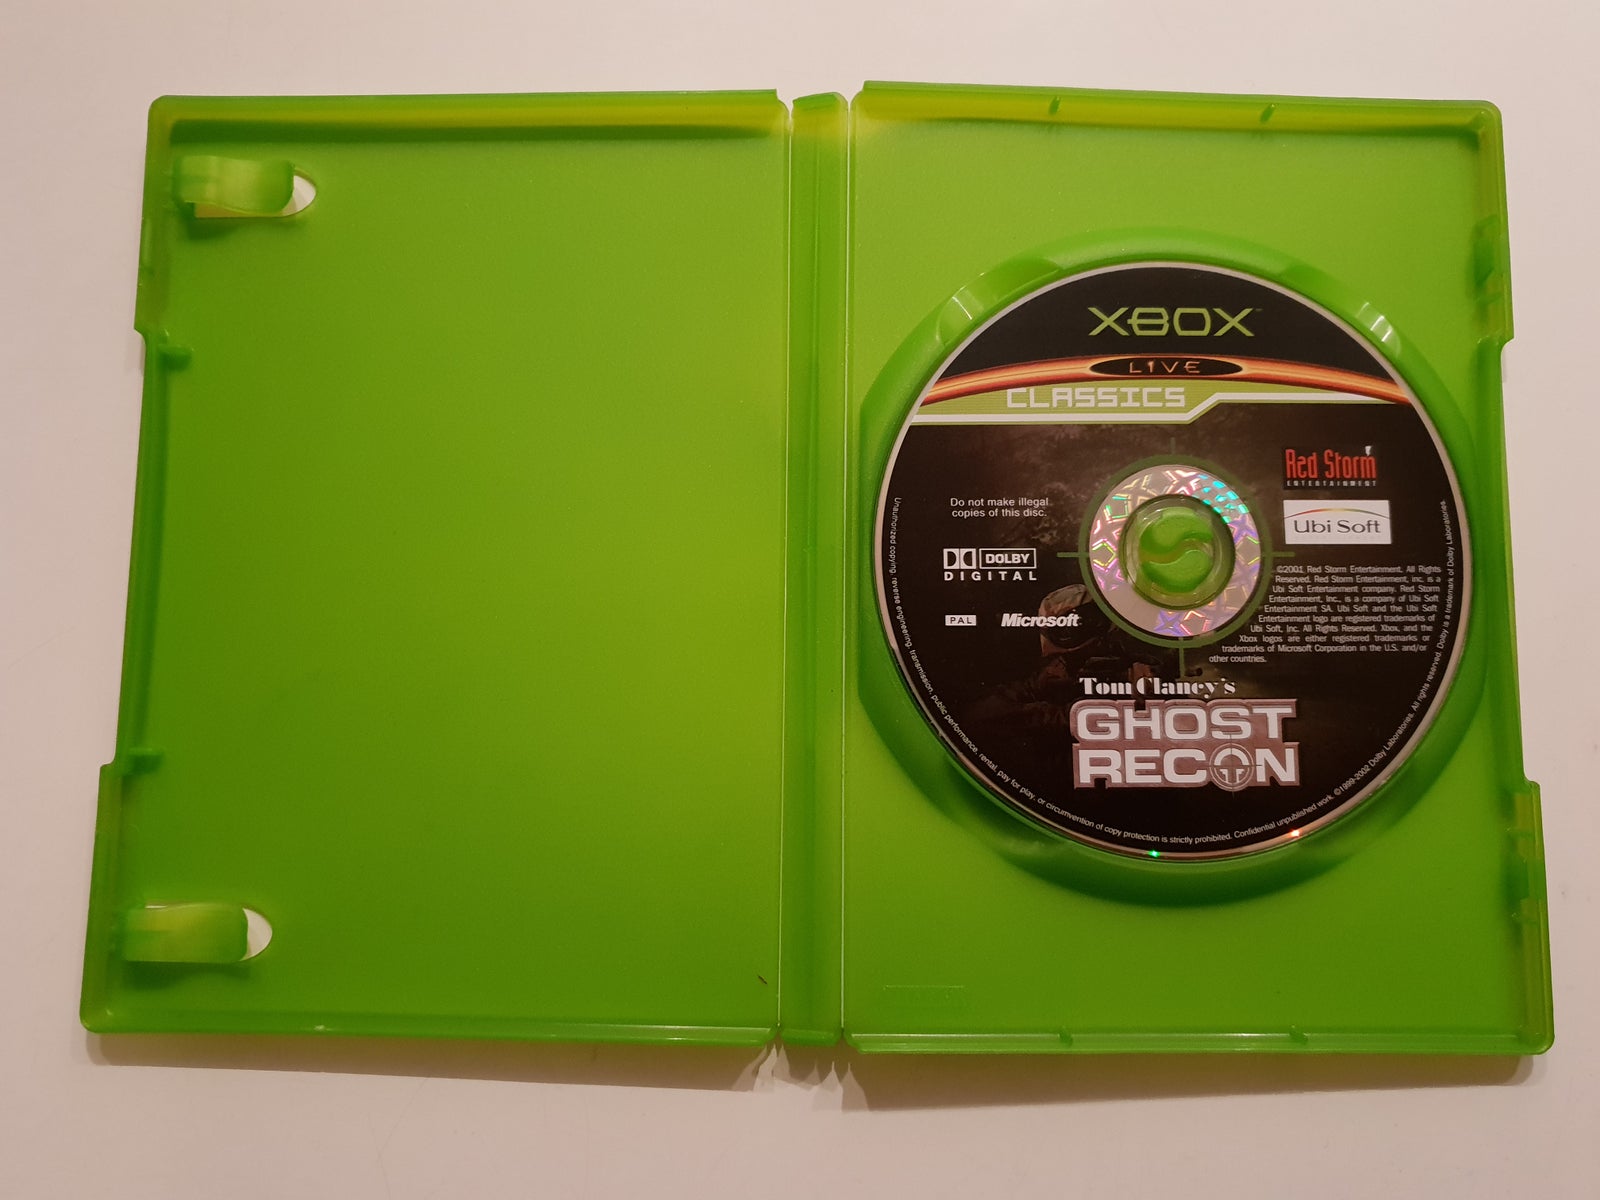 Tom Clancy's Ghost Recon, Xbox, anden genre